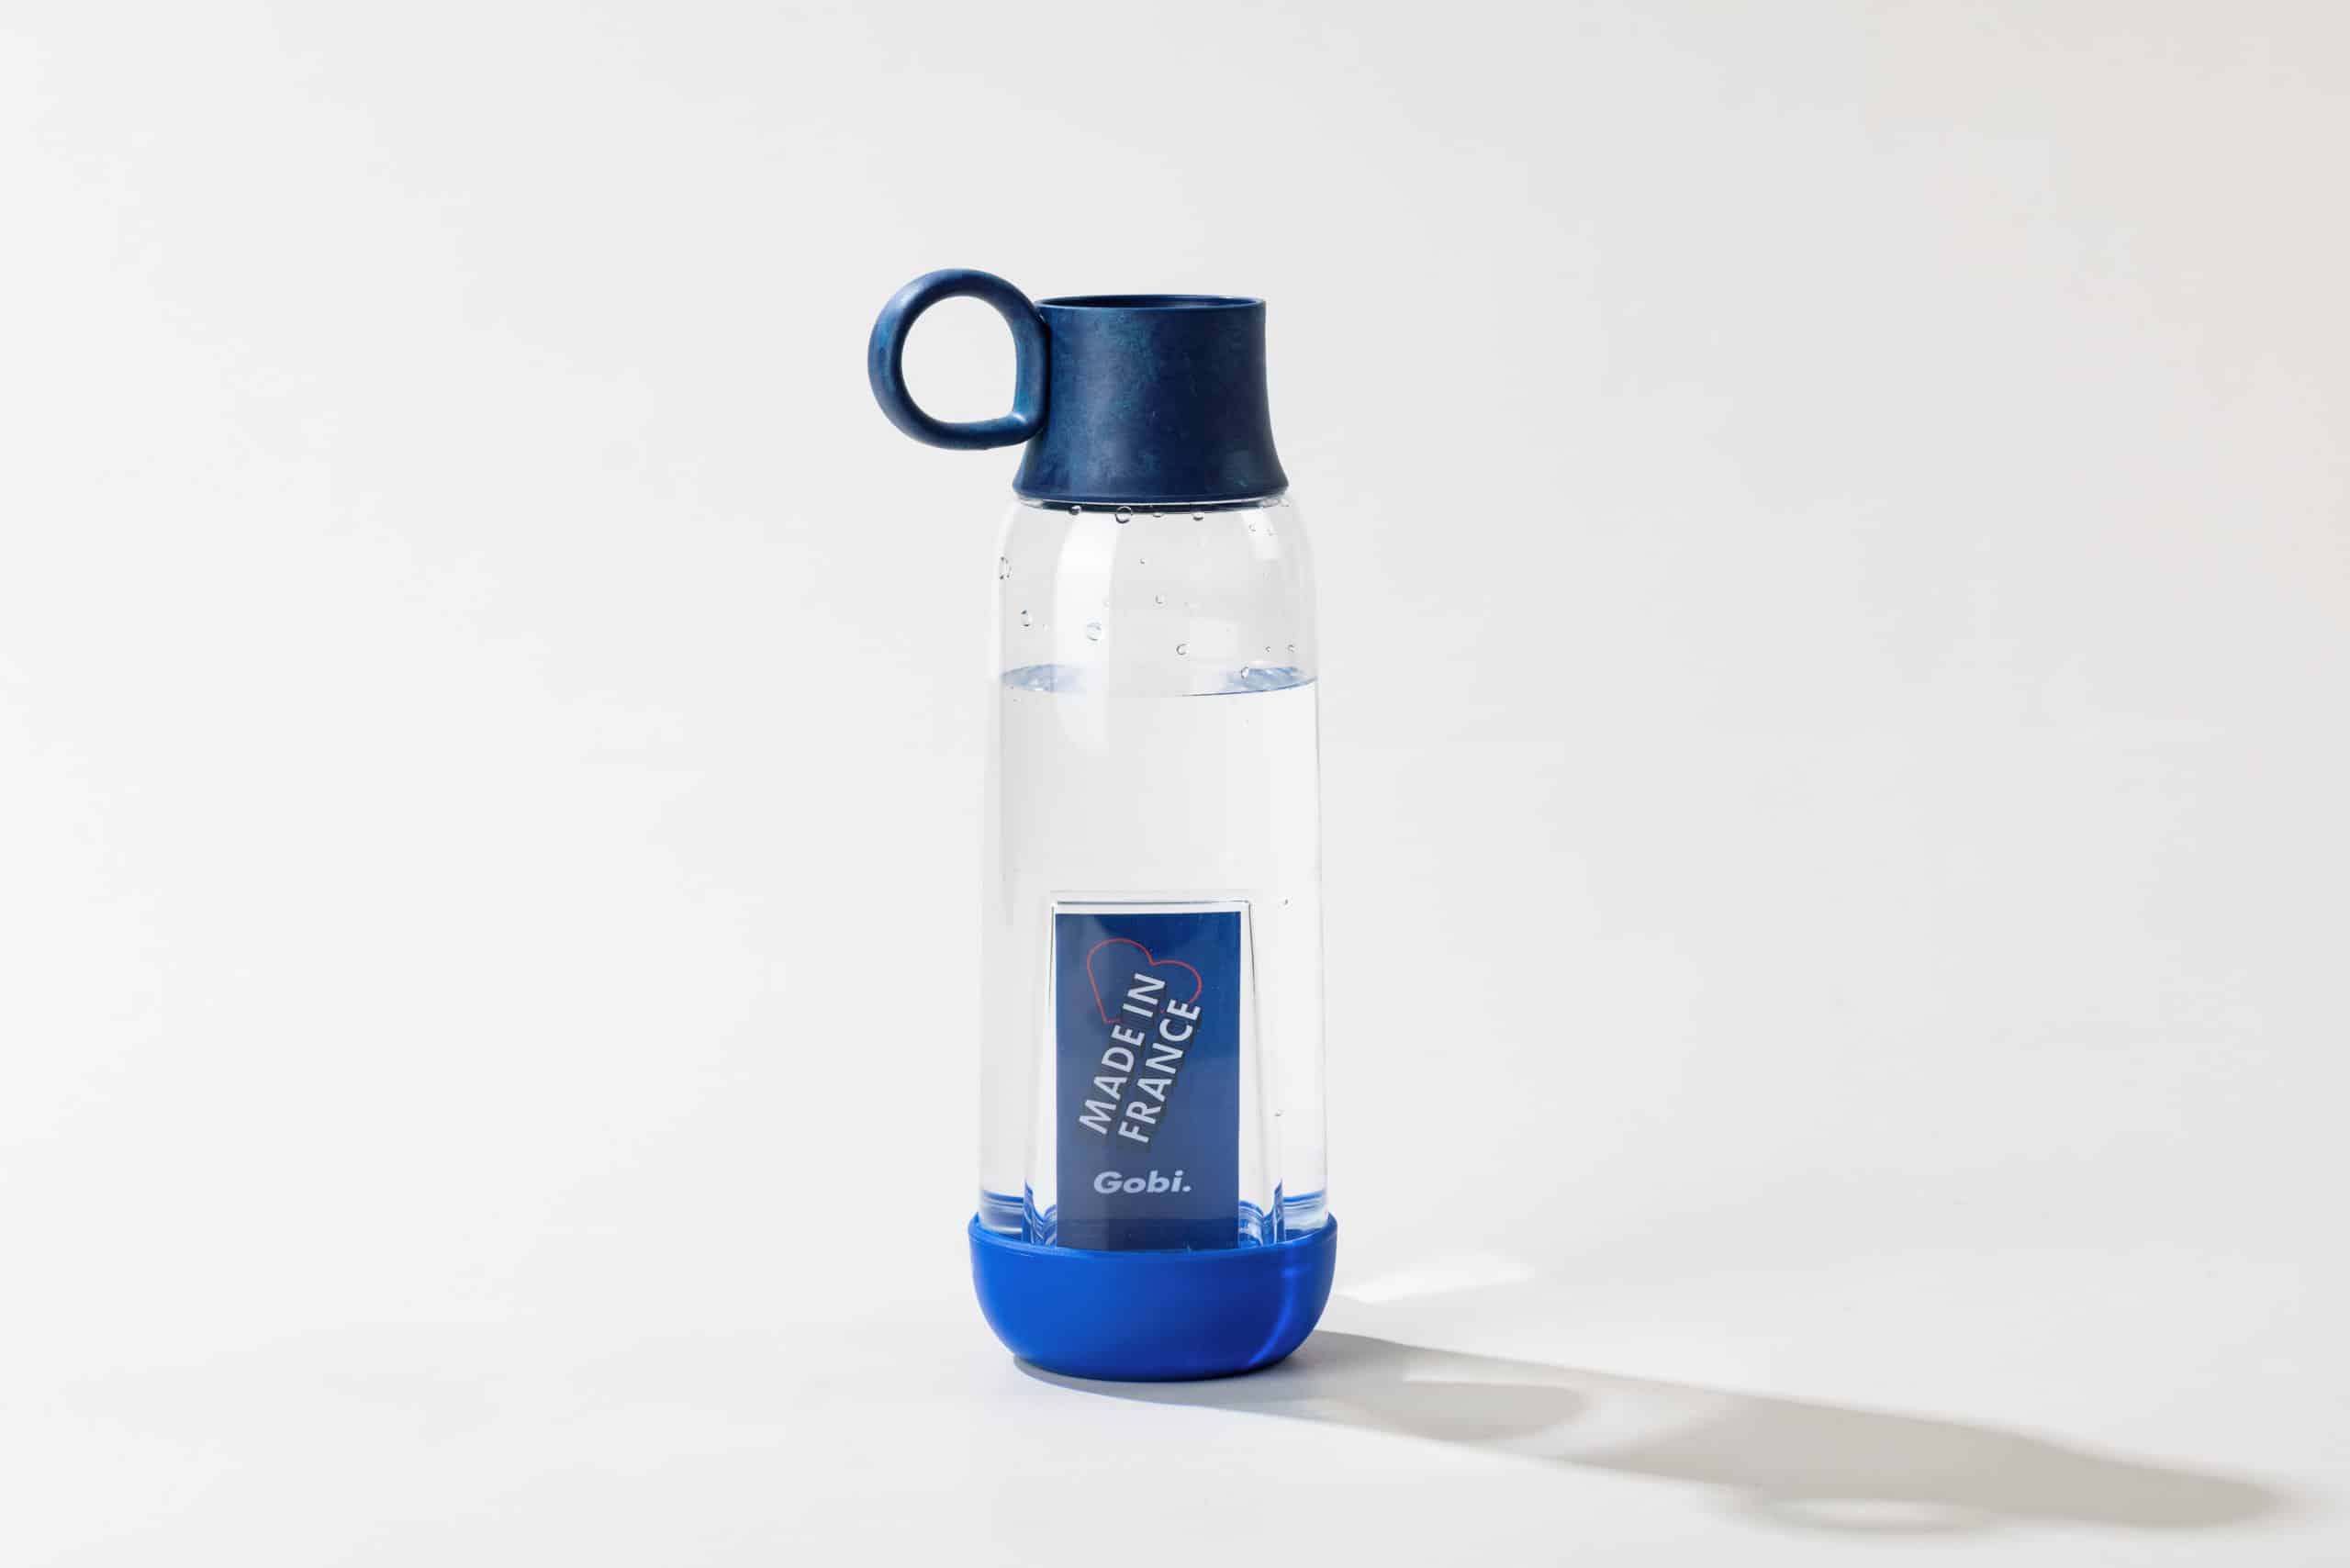 Bouteille verre 1L Carry Bottles disponible à la Réunion